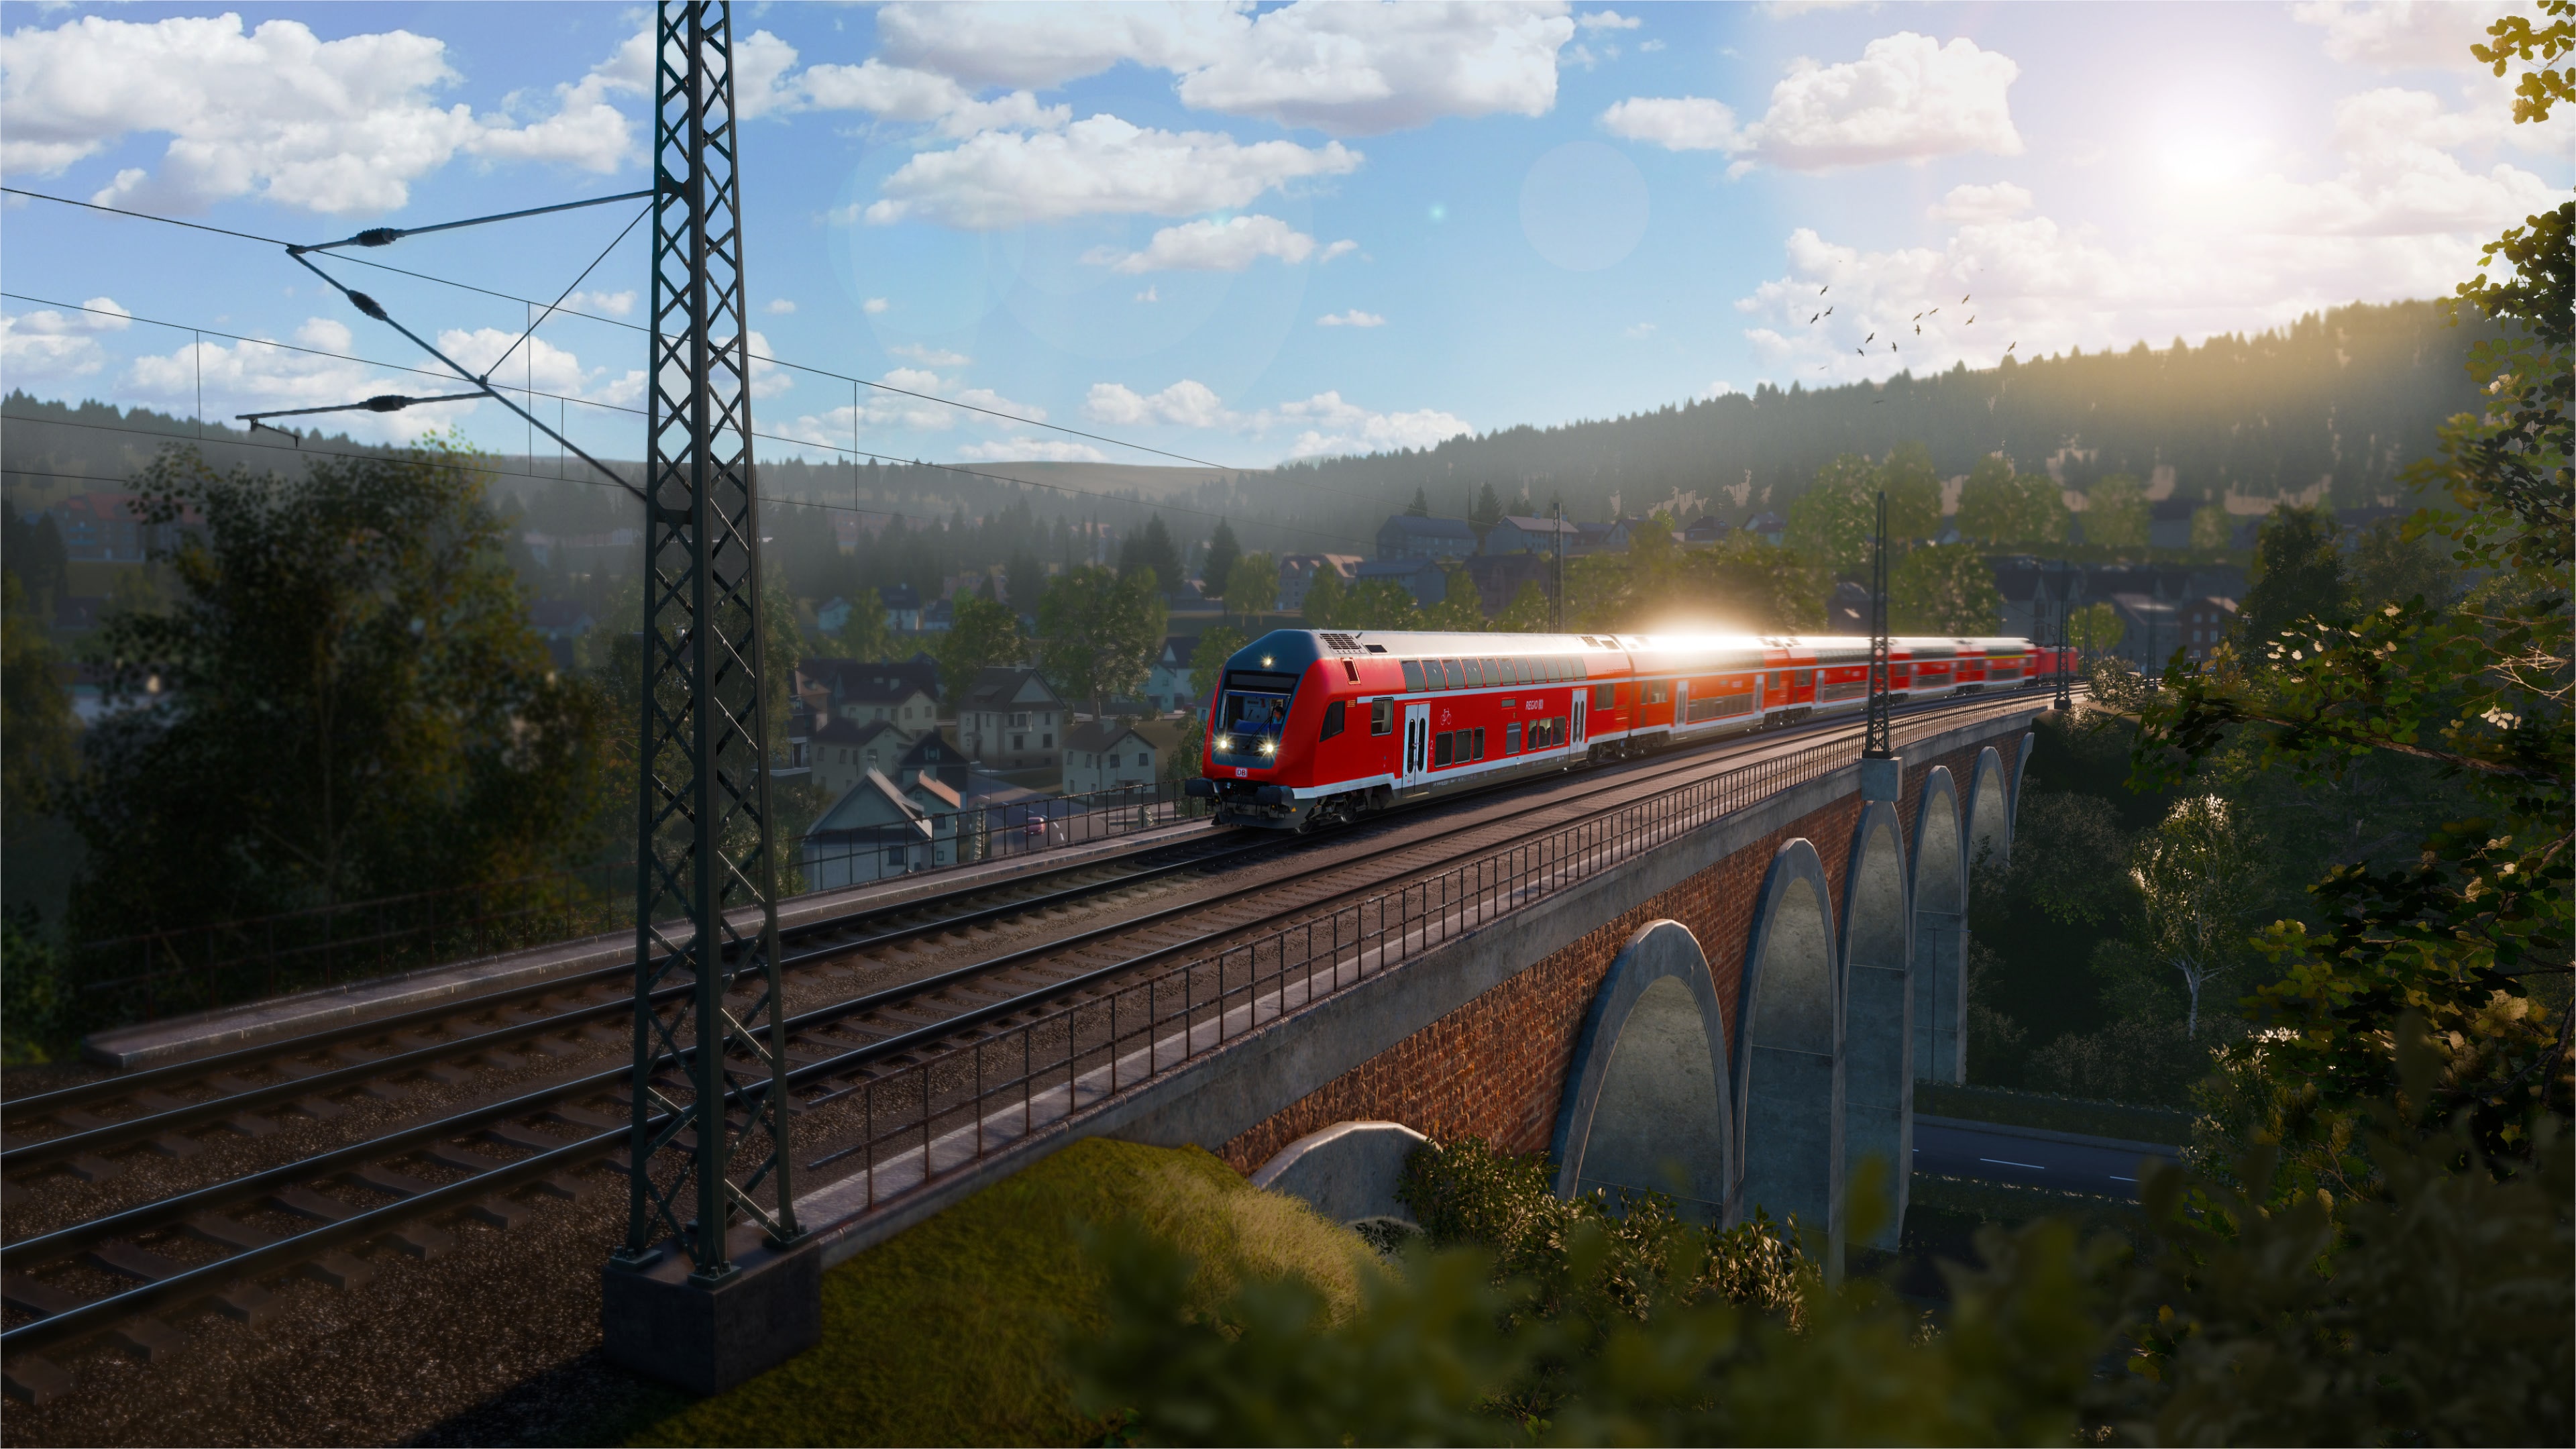 Train Sim World® 4 Compatible: Main Spessart Bahn: Aschaffenburg - Gemünden